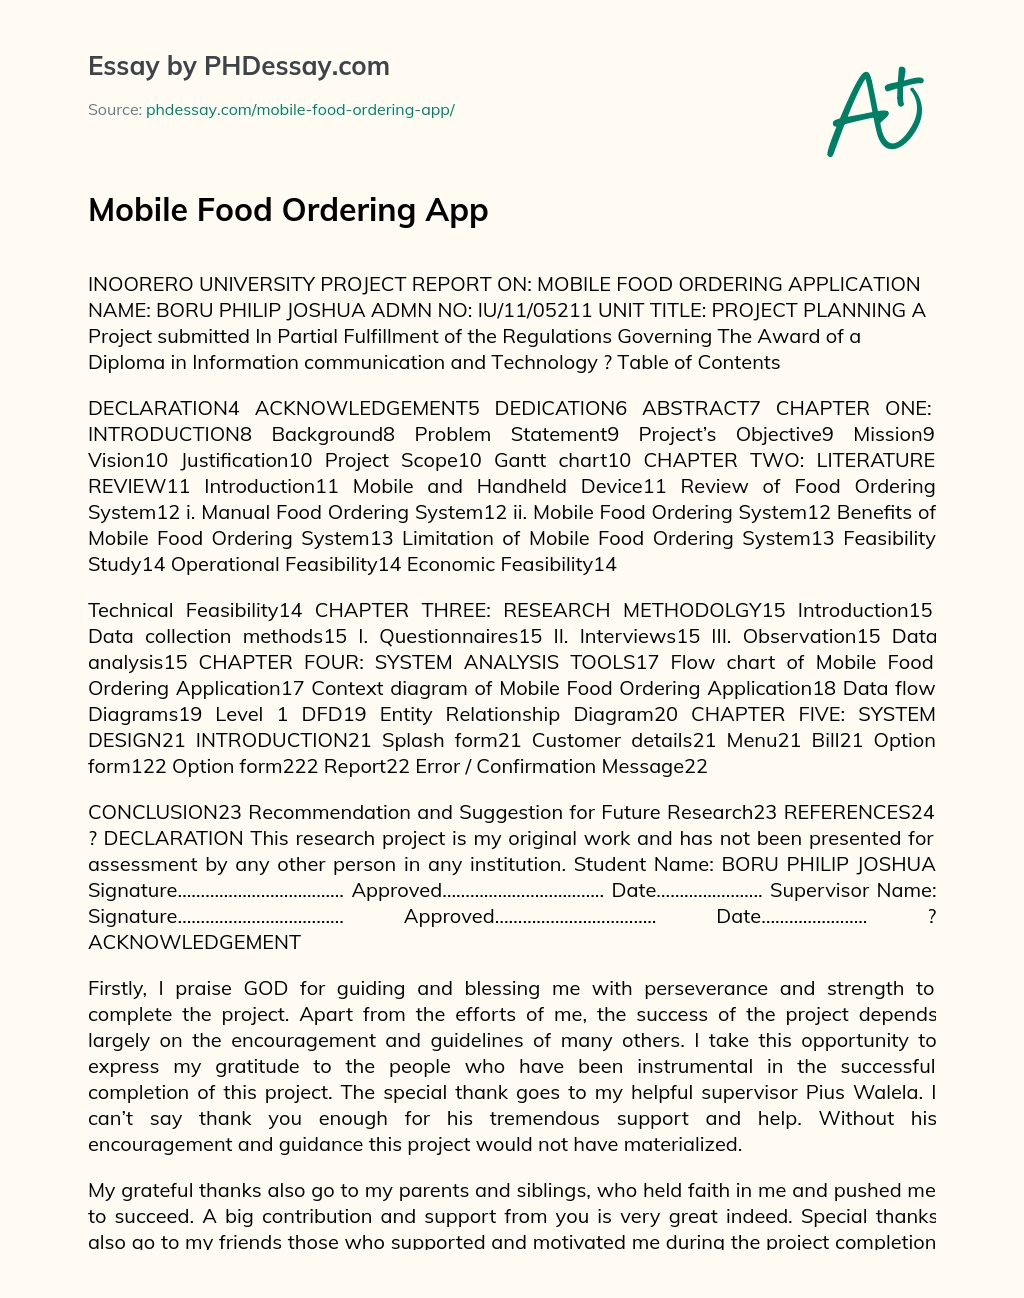 Mobile Food Ordering App essay